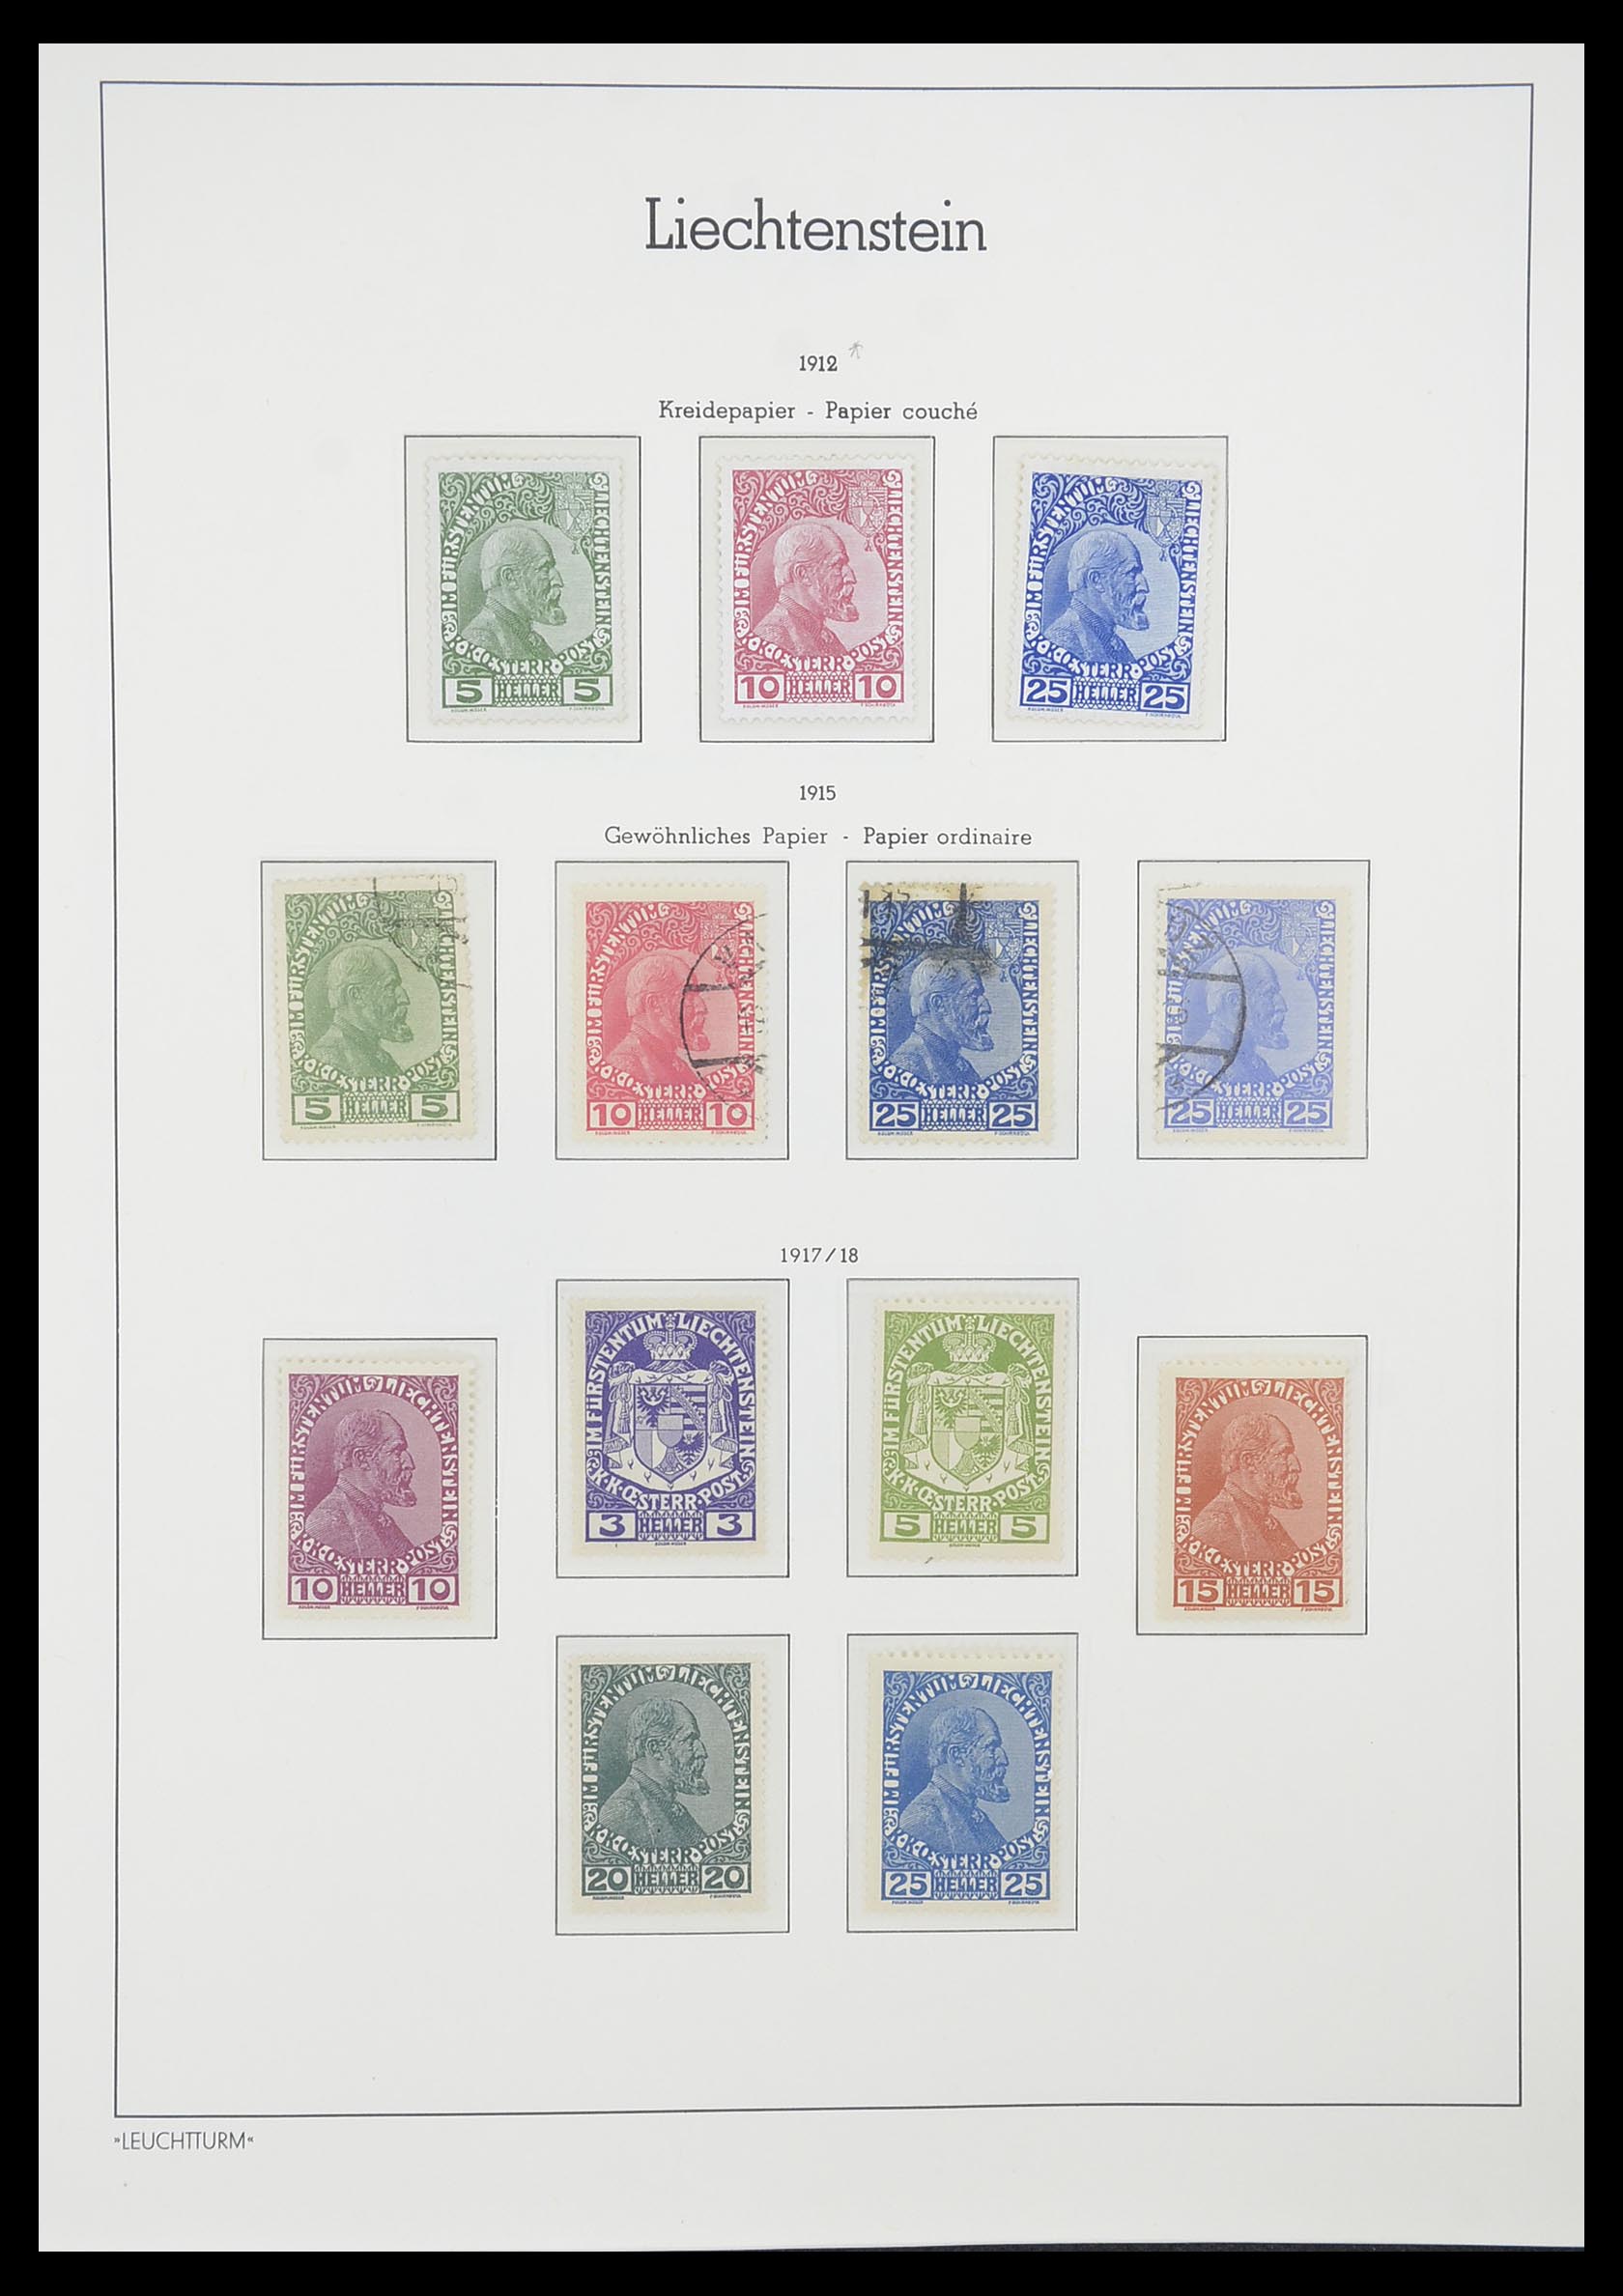 33825 001 - Stamp collection 33825 Liechtenstein 1912-1997.